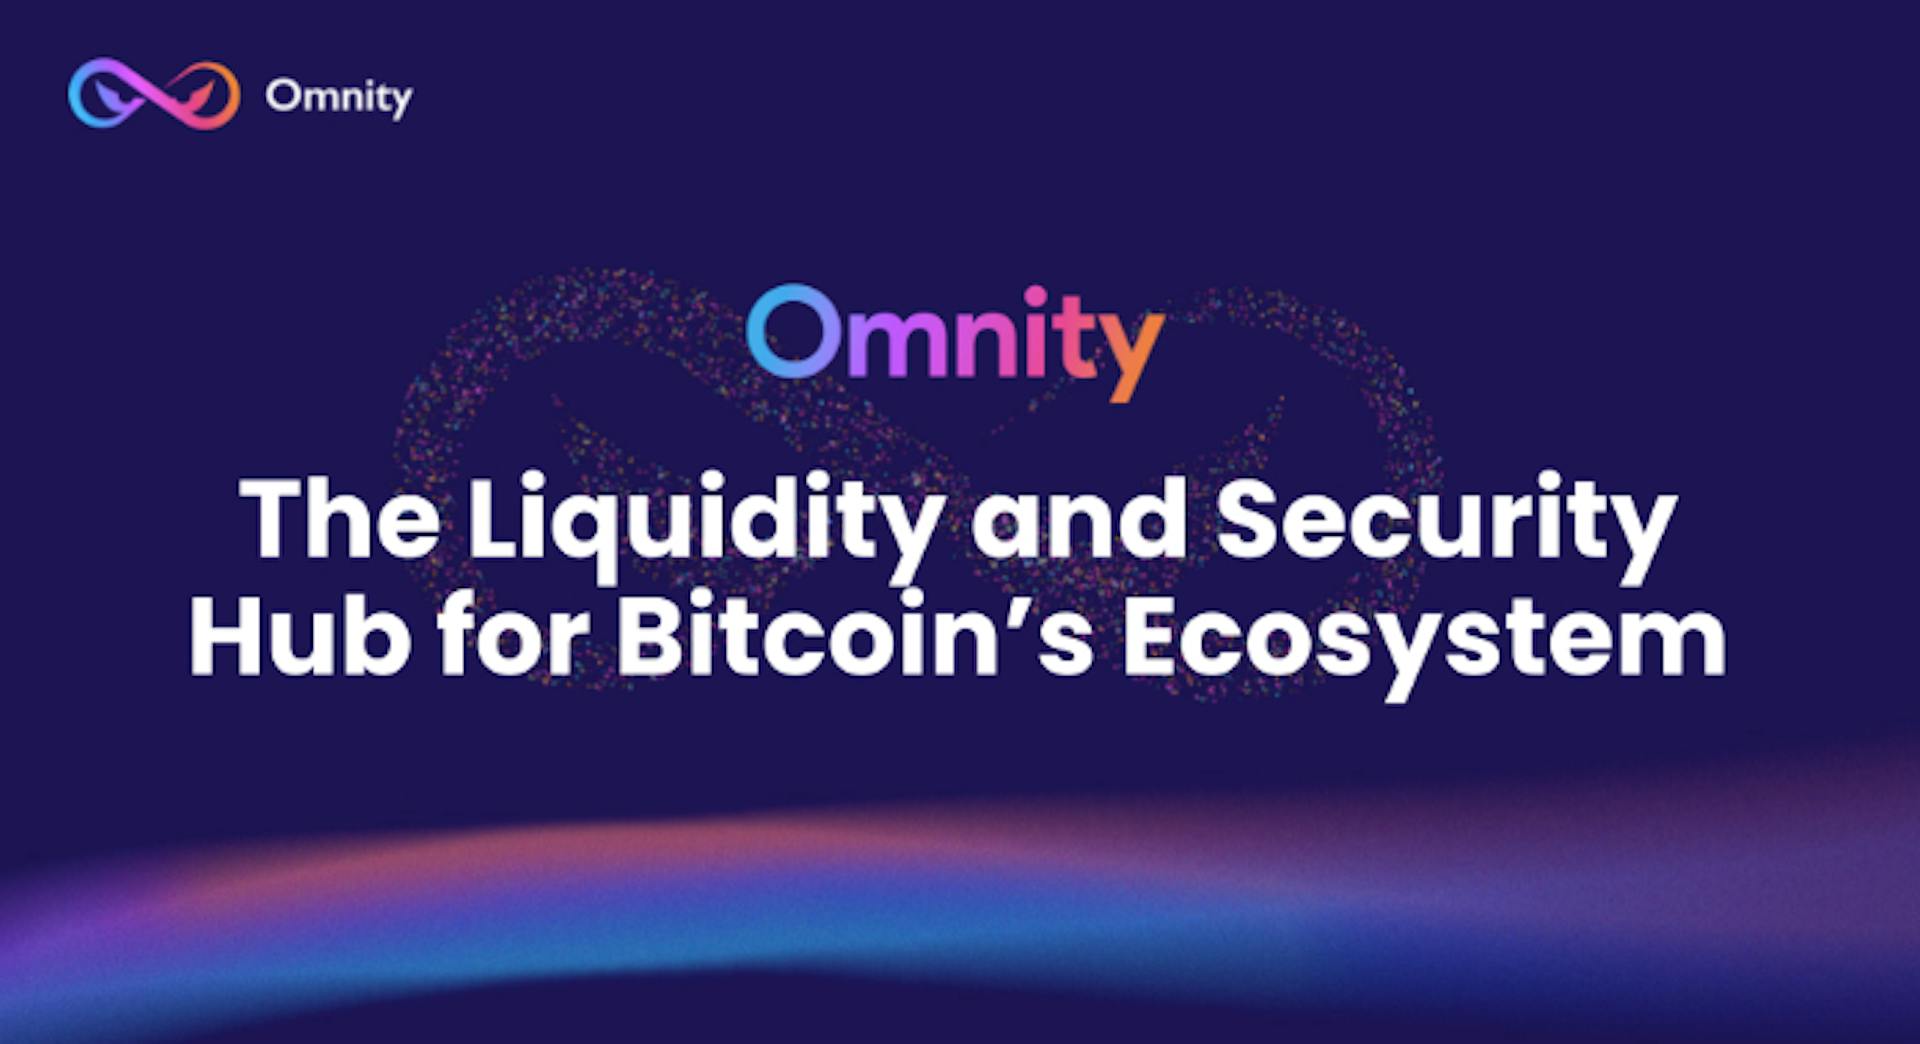 featured image - Trung tâm Onchain hoàn chỉnh của Omnity Network công bố đặt cọc Bitcoin và bảo mật chia sẻ